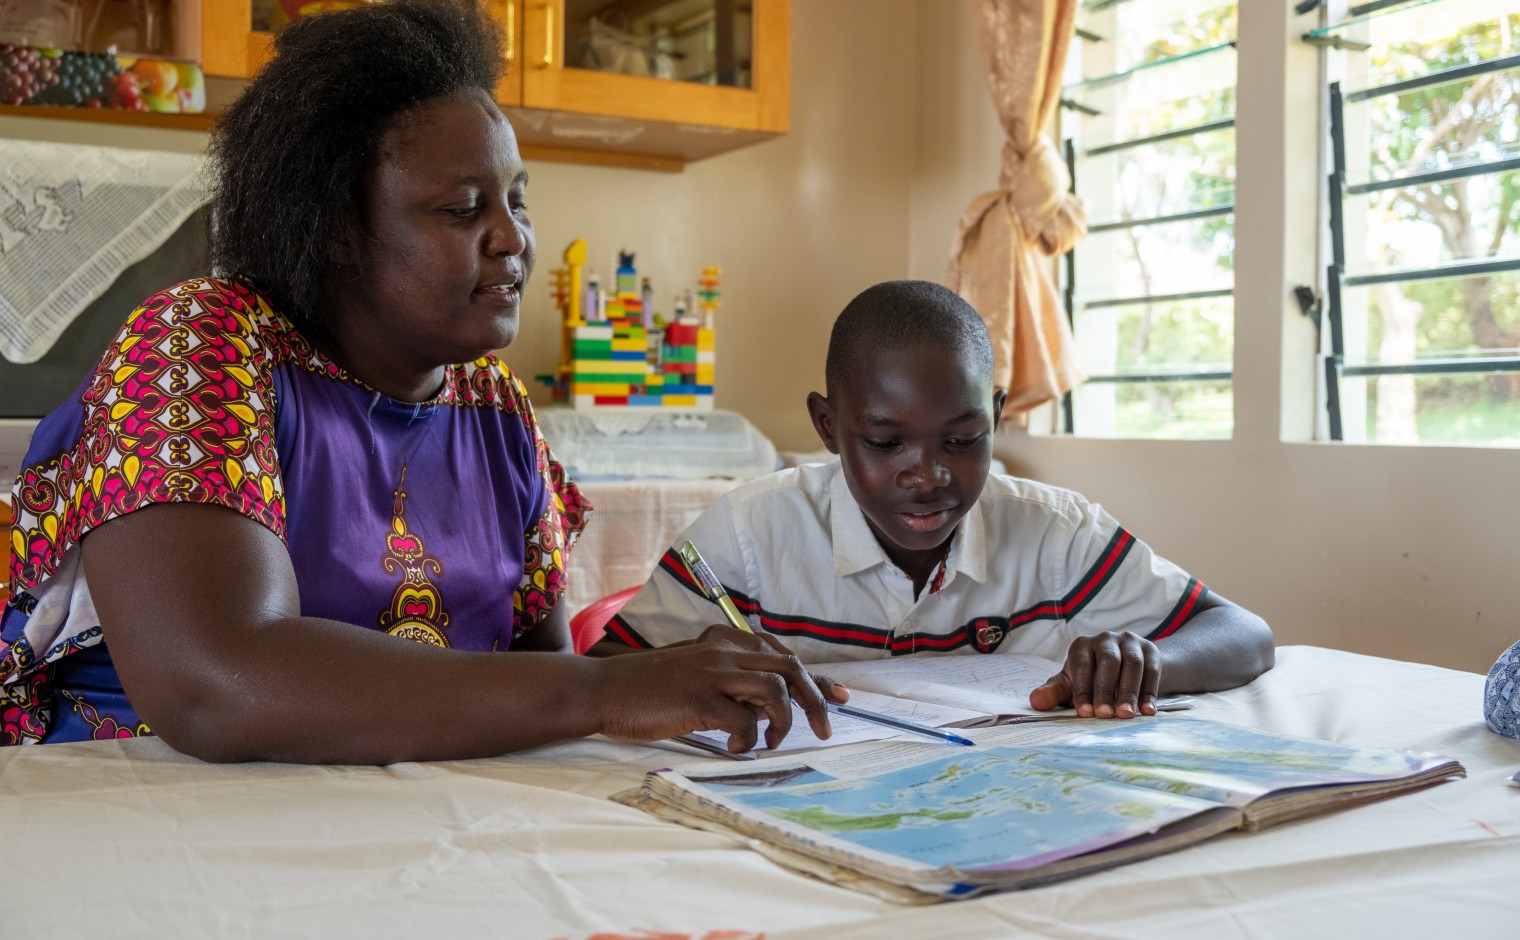 Tijdens de lockdown waren de scholen in Kenia gesloten.
SOS moeders, zoals in kinderdorp Kisumu, gaven hun
kinderen met ondersteuning van school thuis-onderwijs.